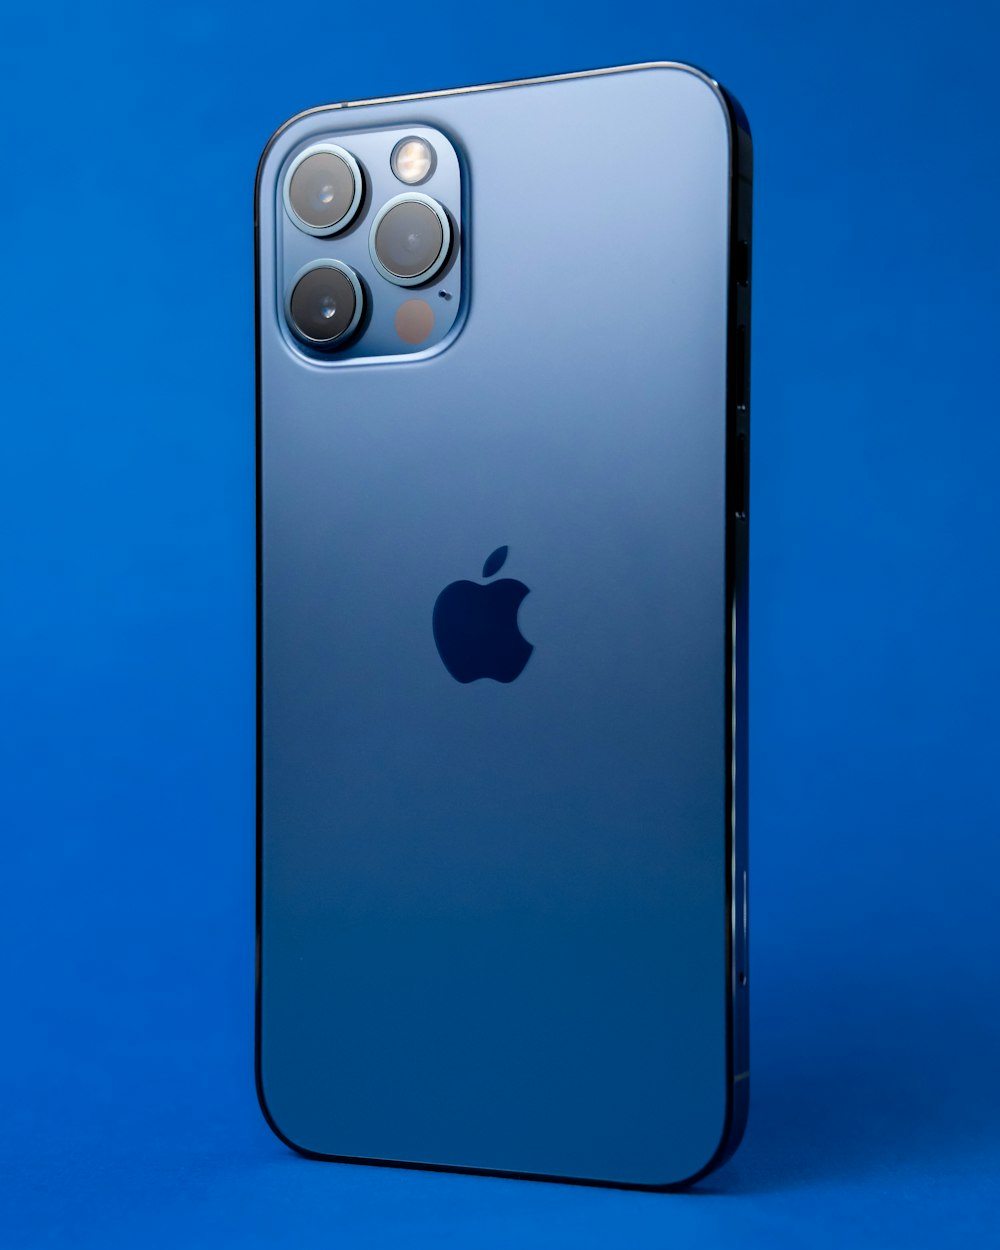 Silber iPhone 6 mit blauer Hülle